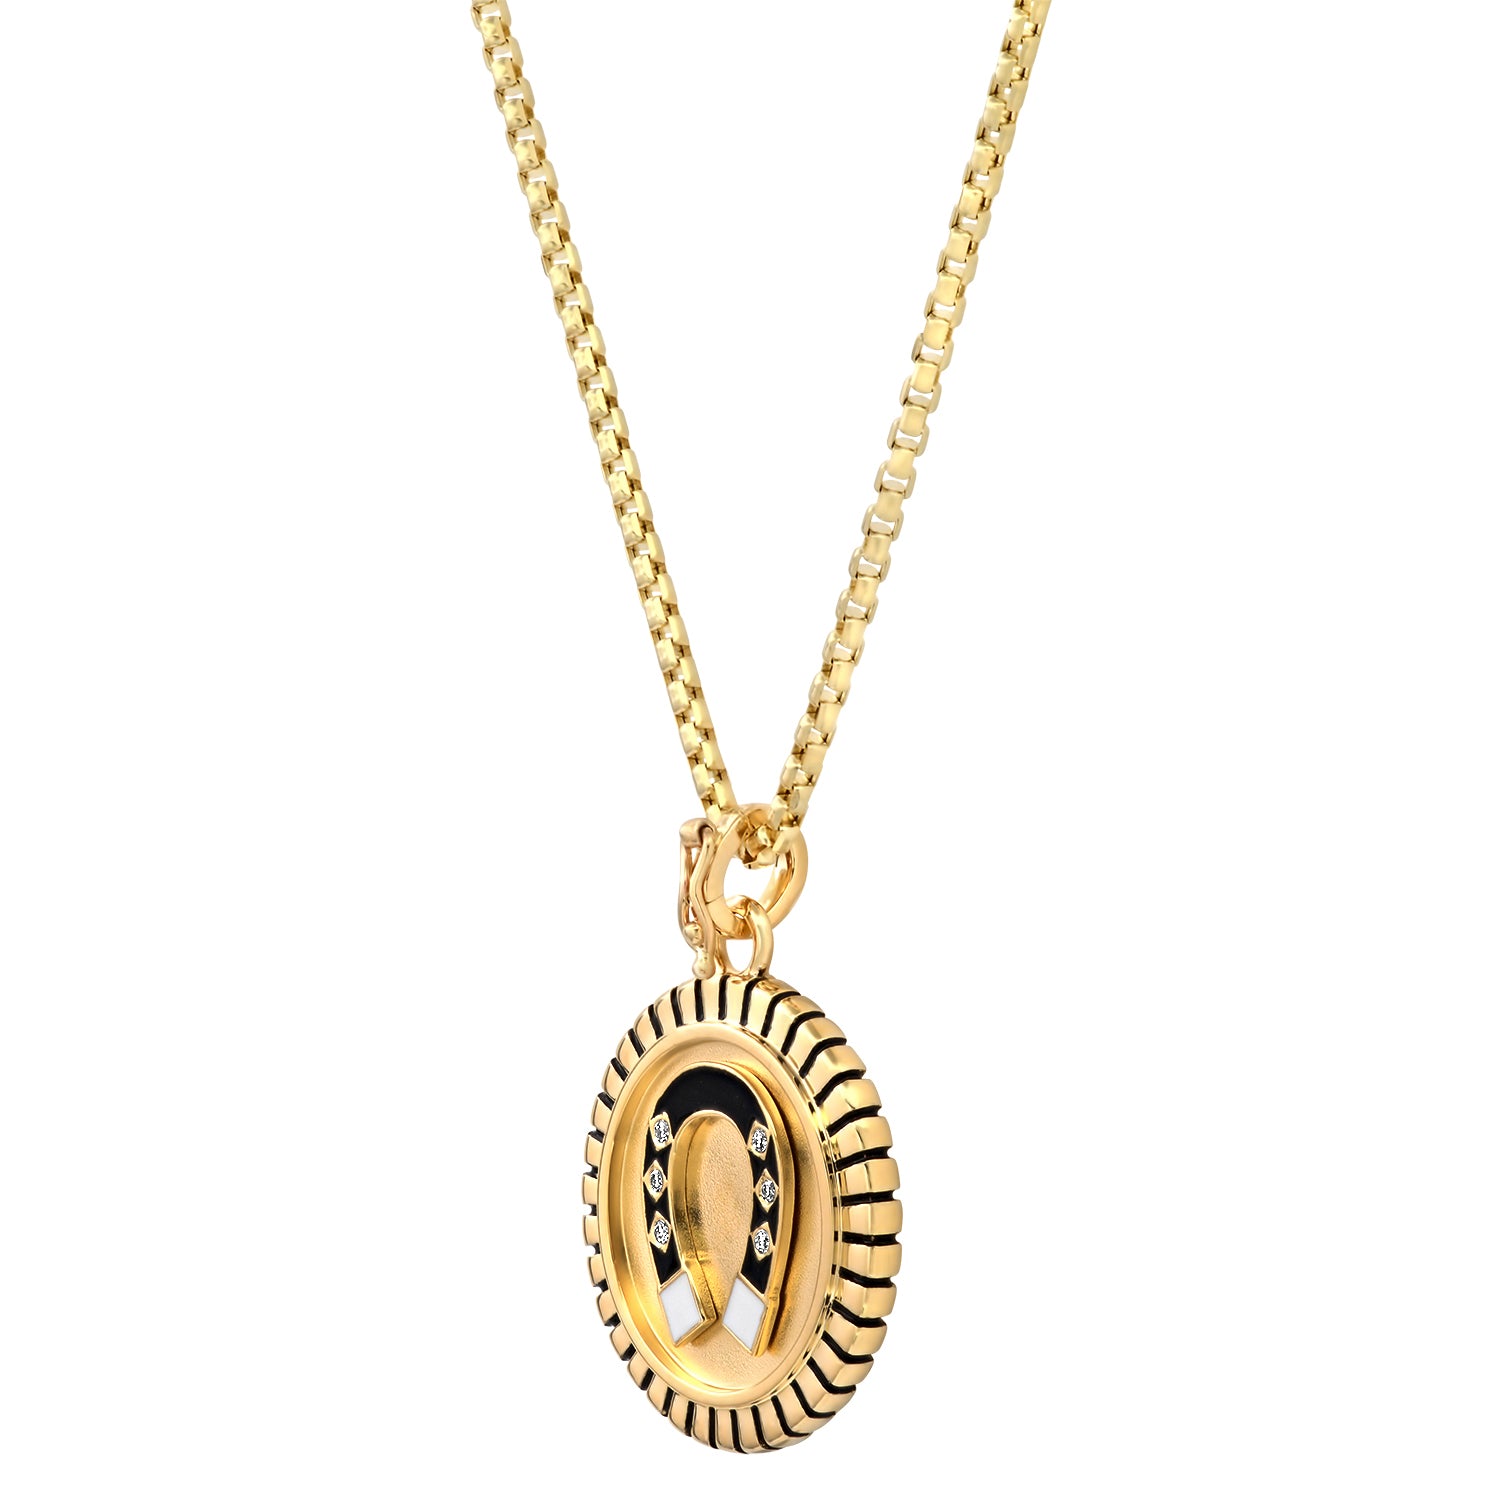 Horseshoe Gold Pendant Necklace Pendant Helena Rose Jewelry   